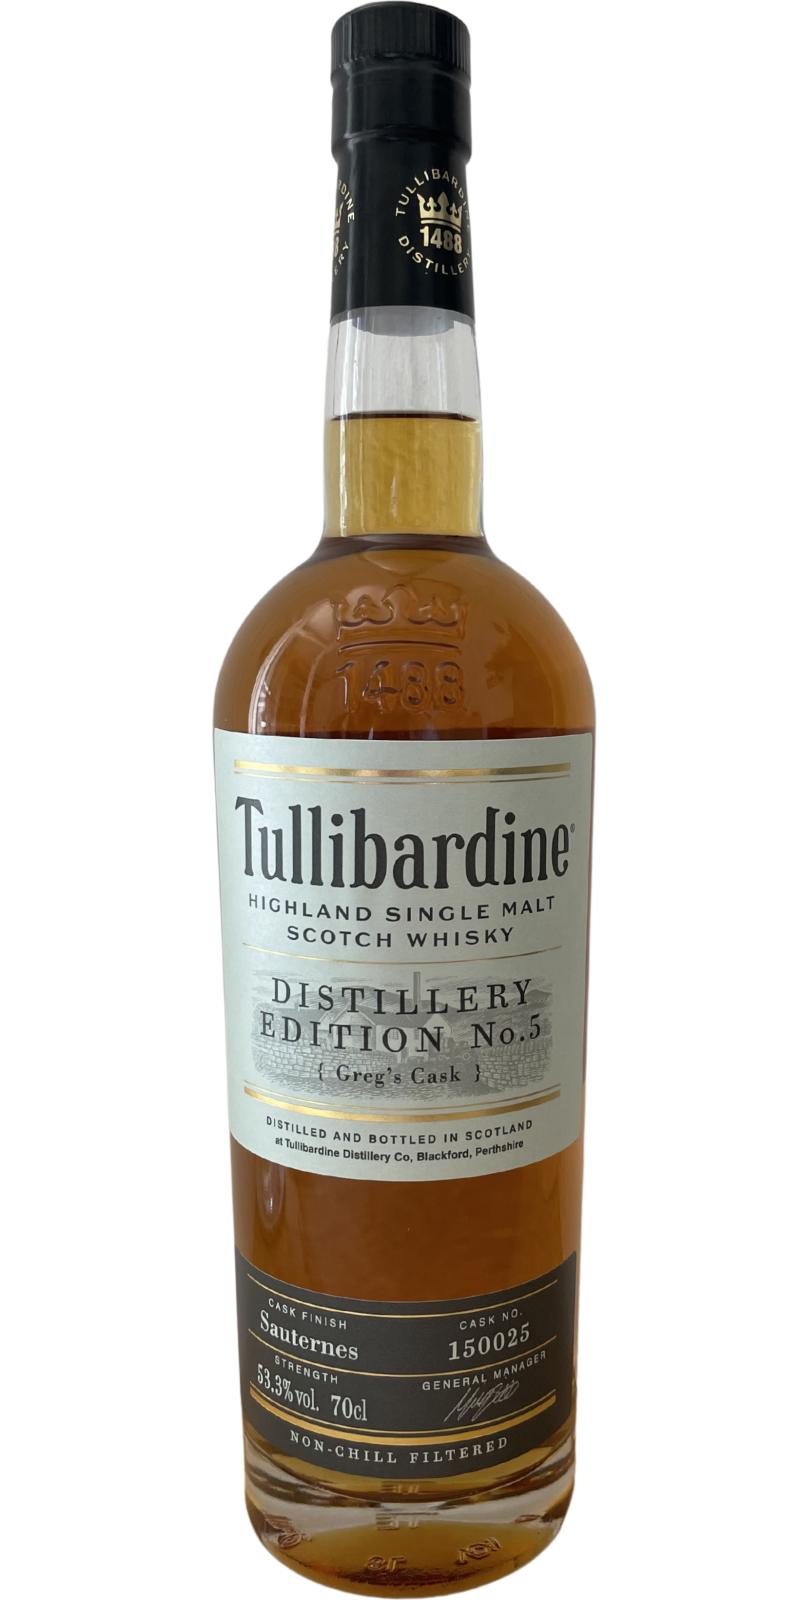 Tullibardine Distillery Edition No.5